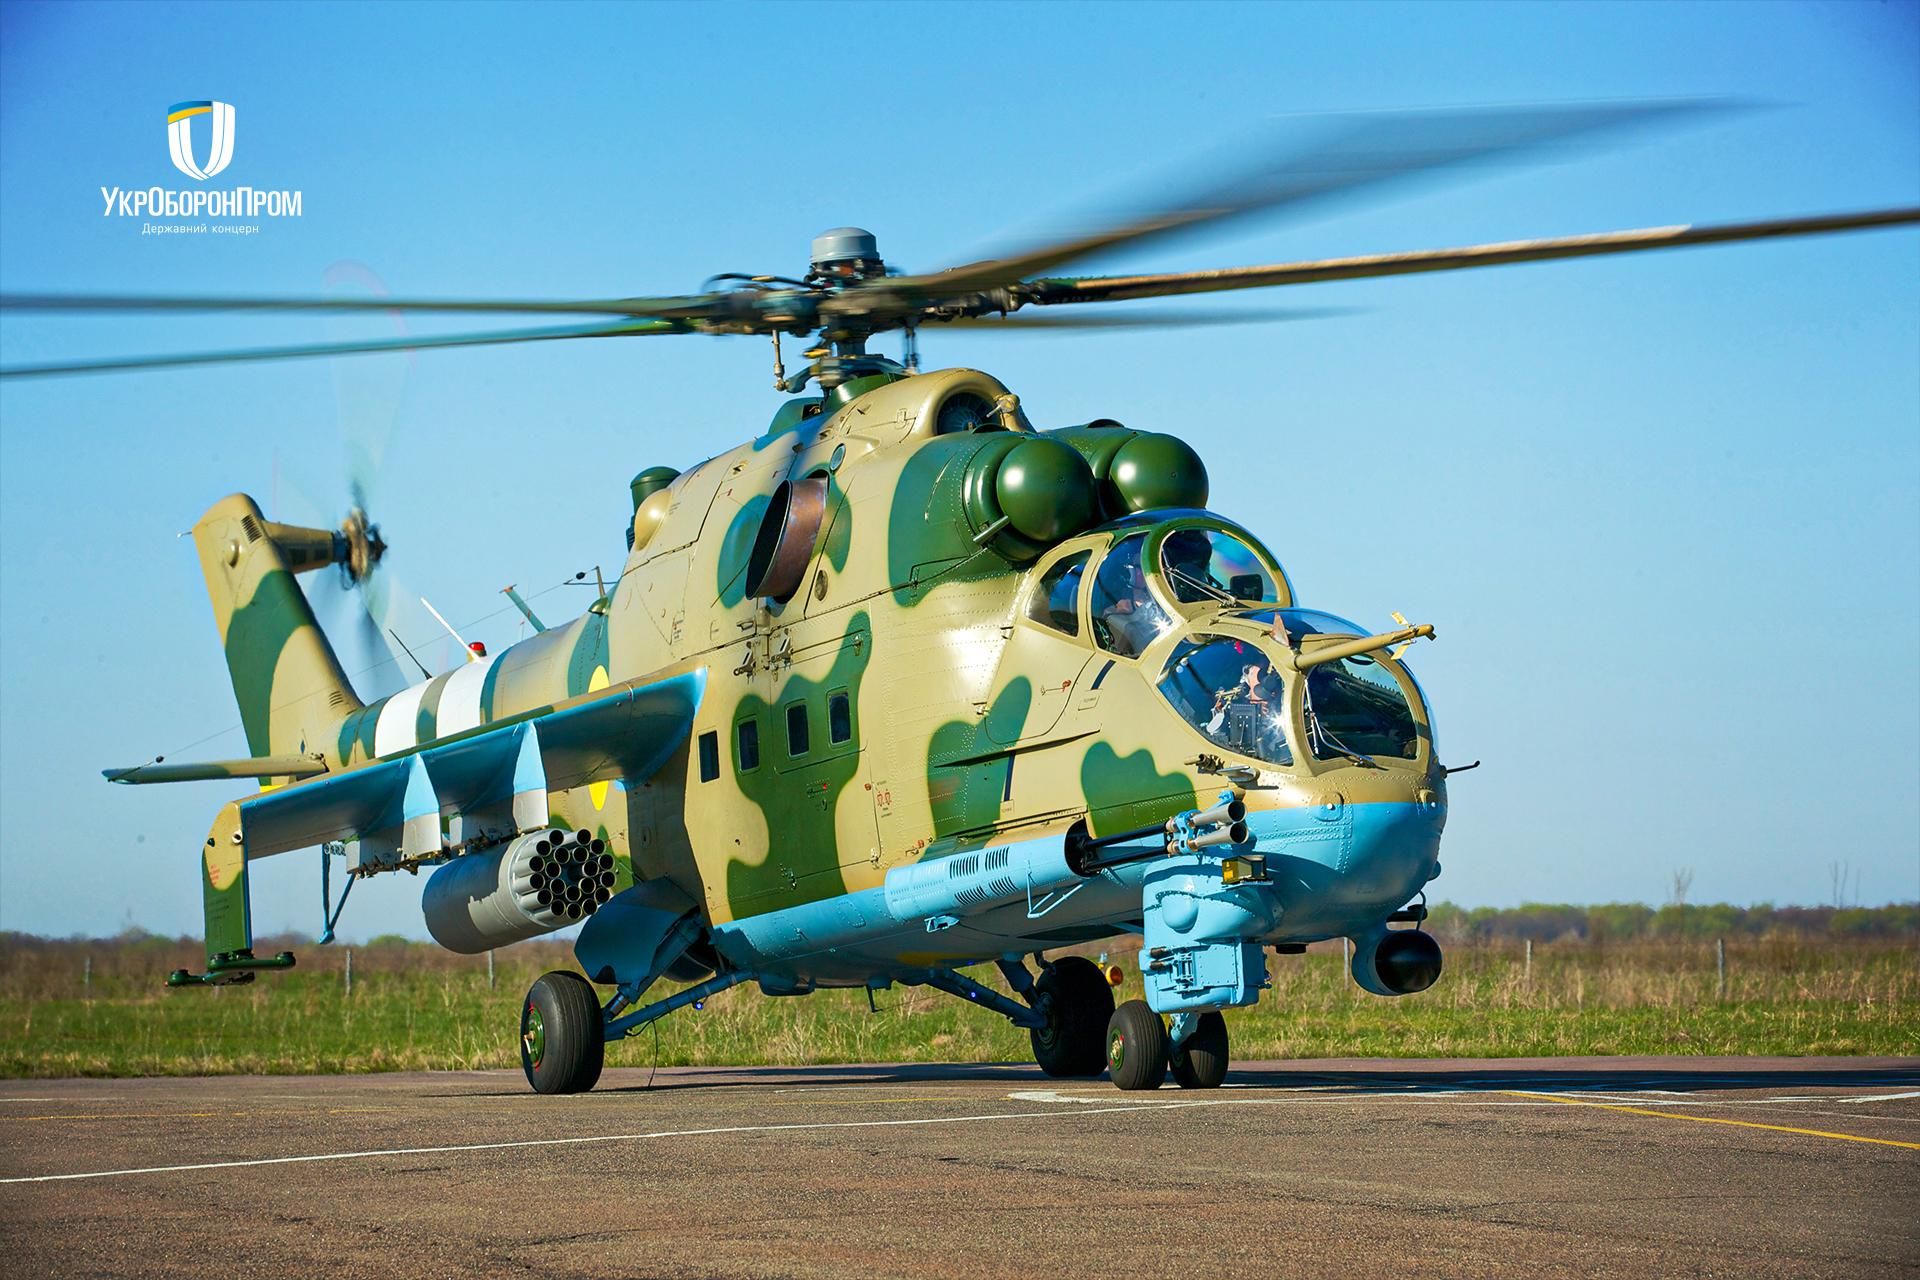 Польща таємно надала Україні гелікоптери Мі-24 — WSJ